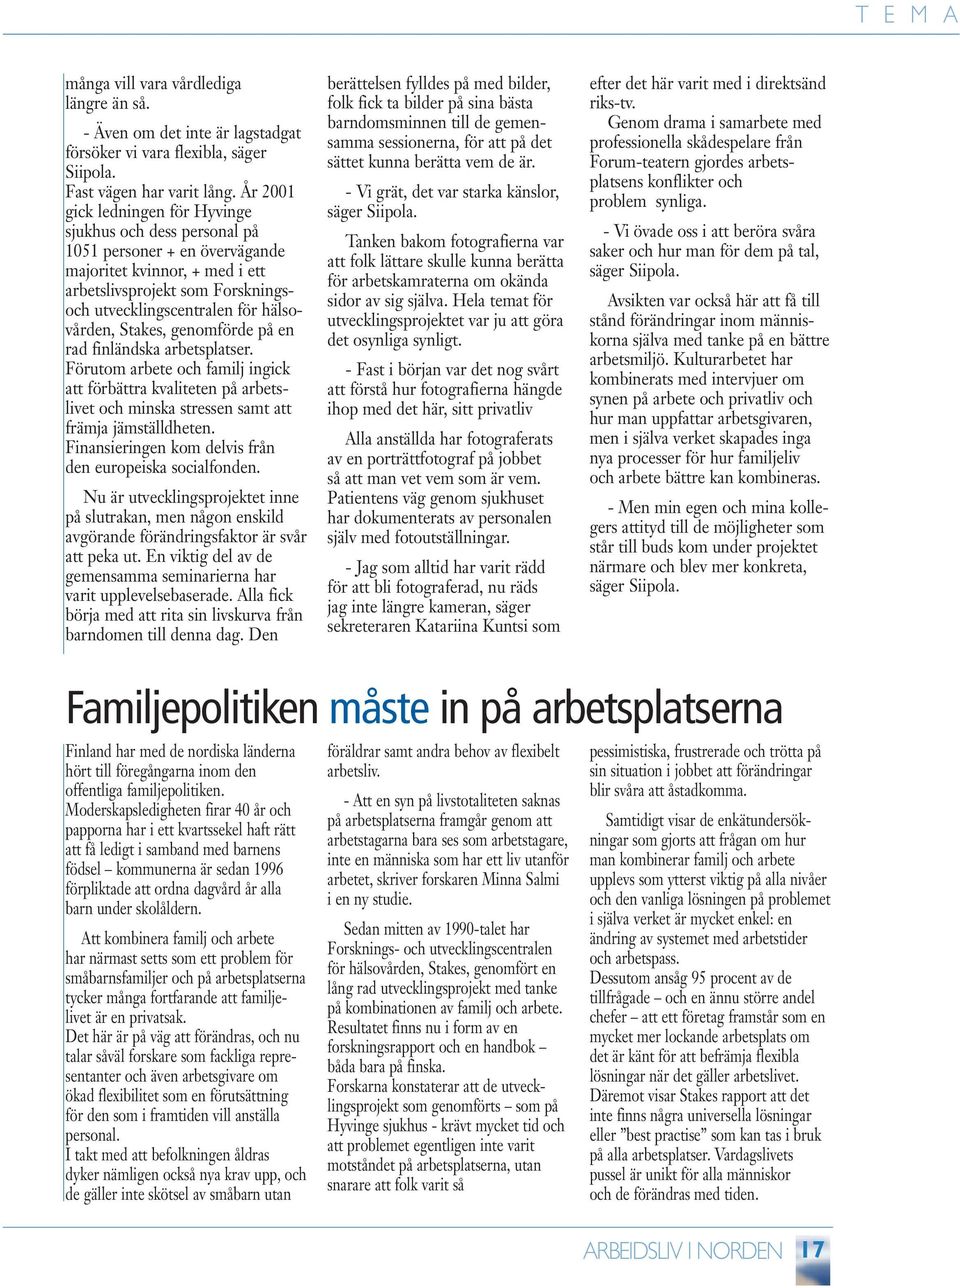 Stakes, genomförde på en rad finländska arbetsplatser. Förutom arbete och familj ingick att förbättra kvaliteten på arbetslivet och minska stressen samt att främja jämställdheten.